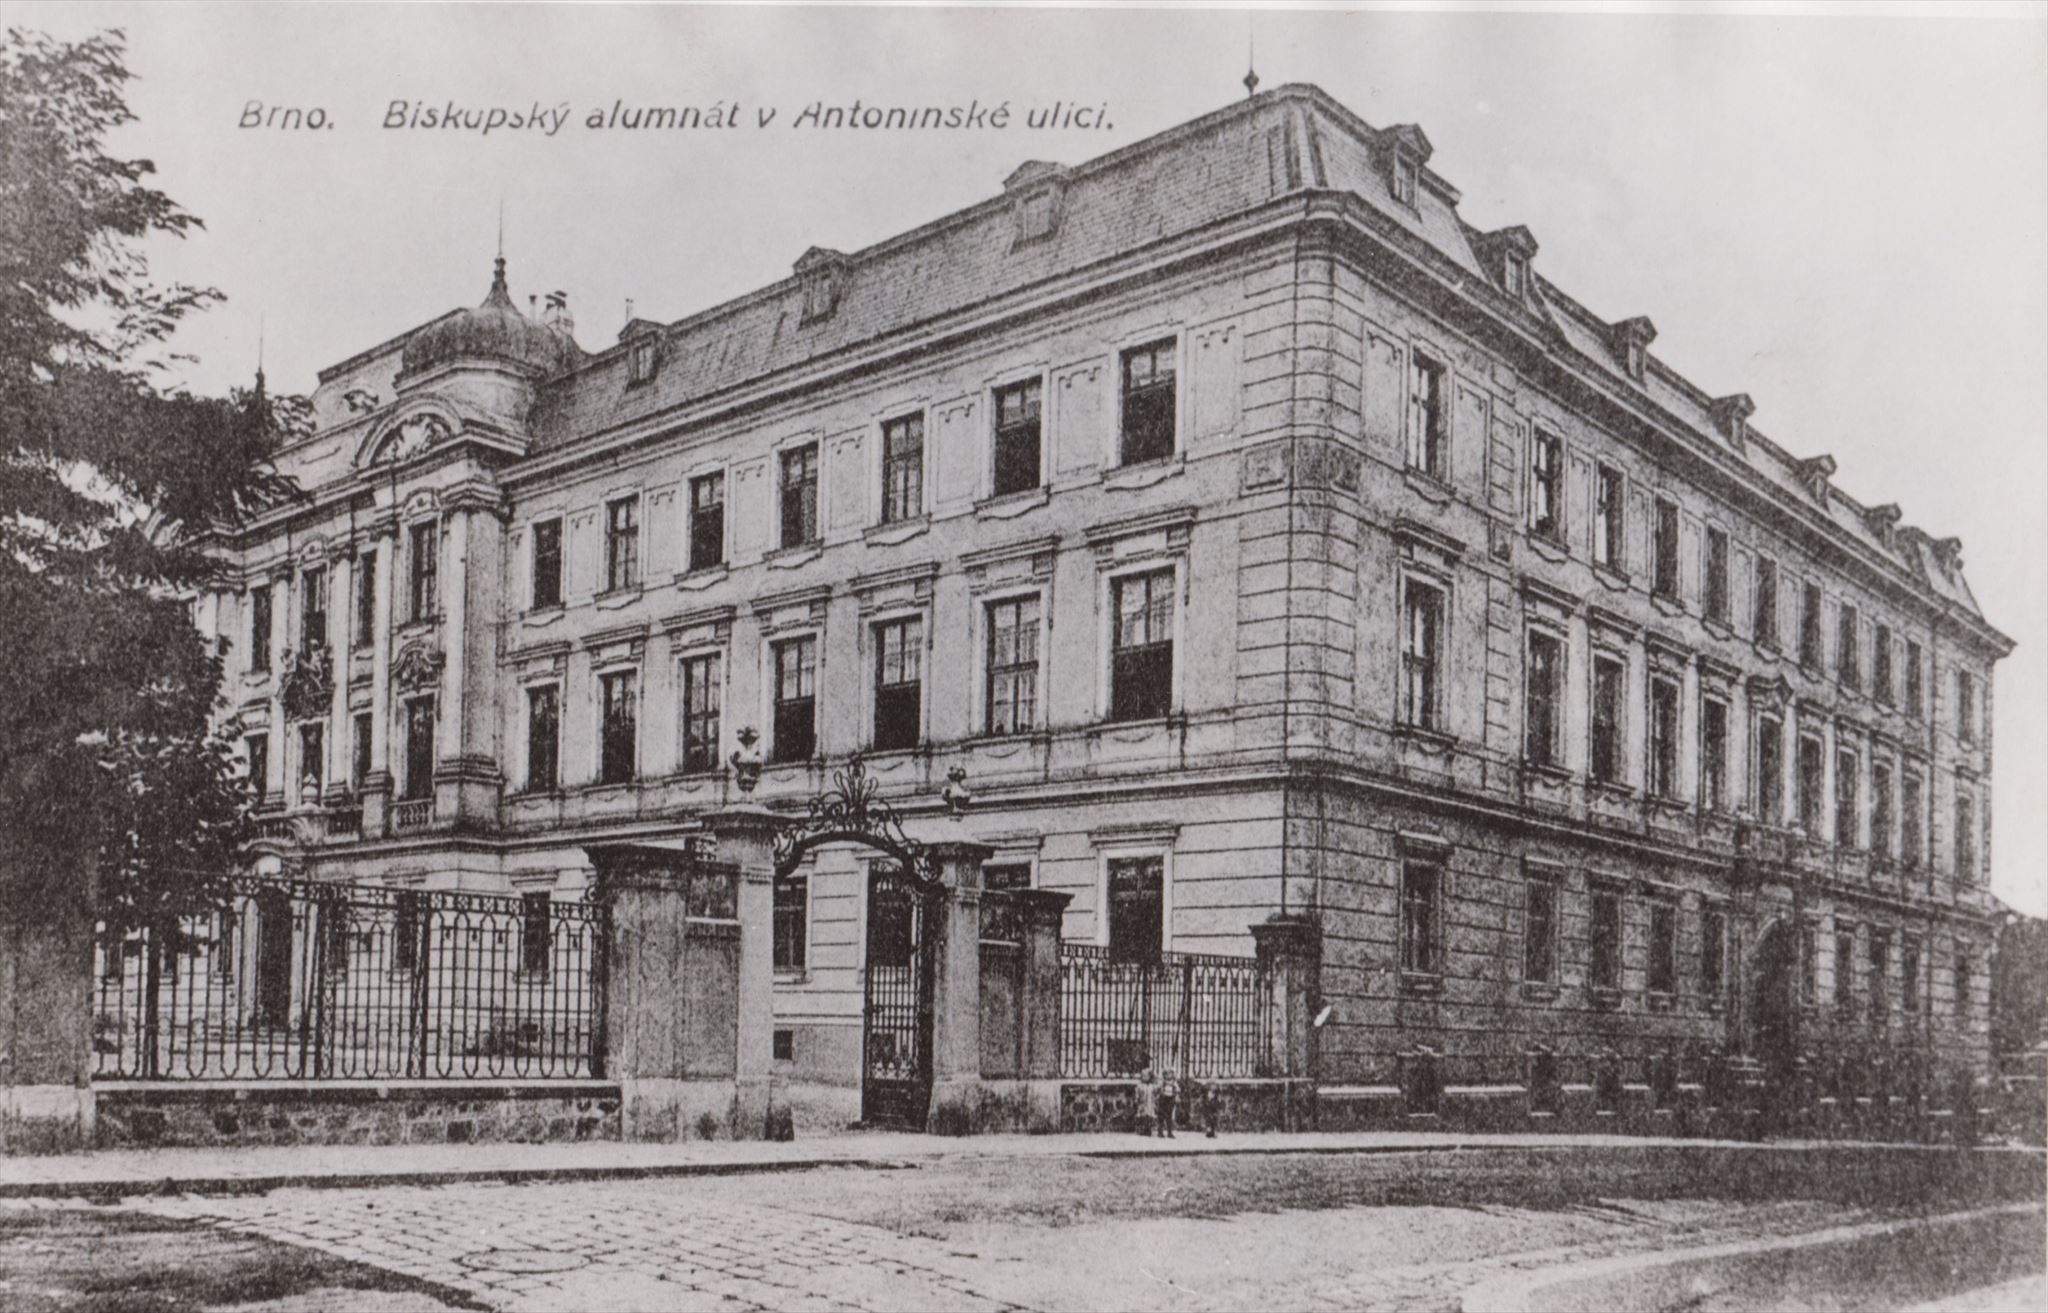 Bývalý alumnát (církevní školský ústav pro chudší děti), sídlo PrF mezi léty 1919 - 1932